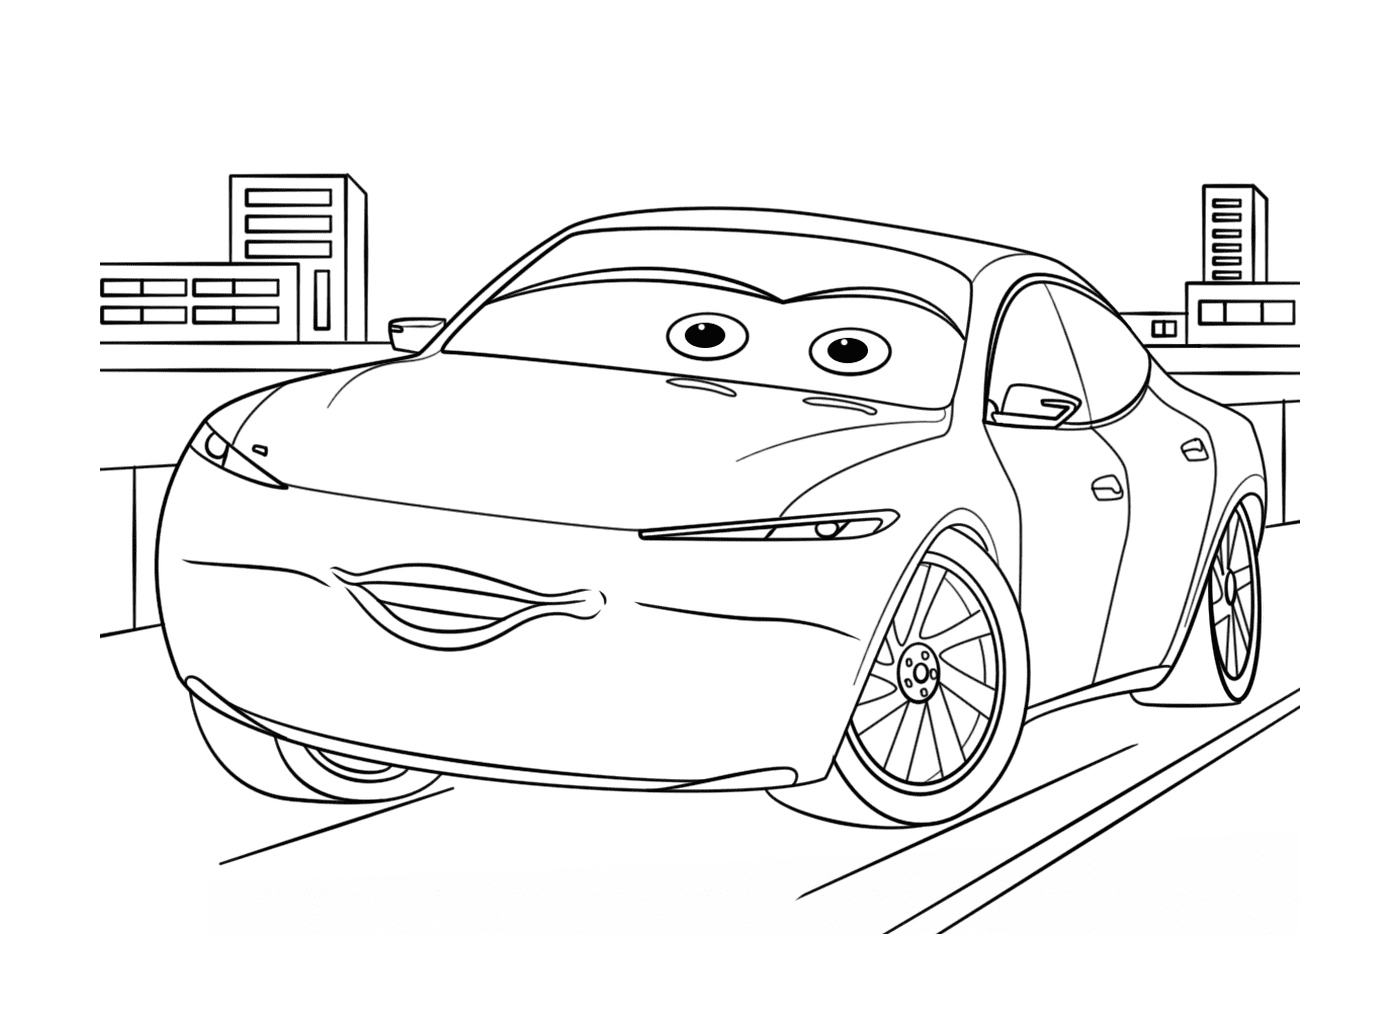  Um carro com olhos desenhados sobre ele 